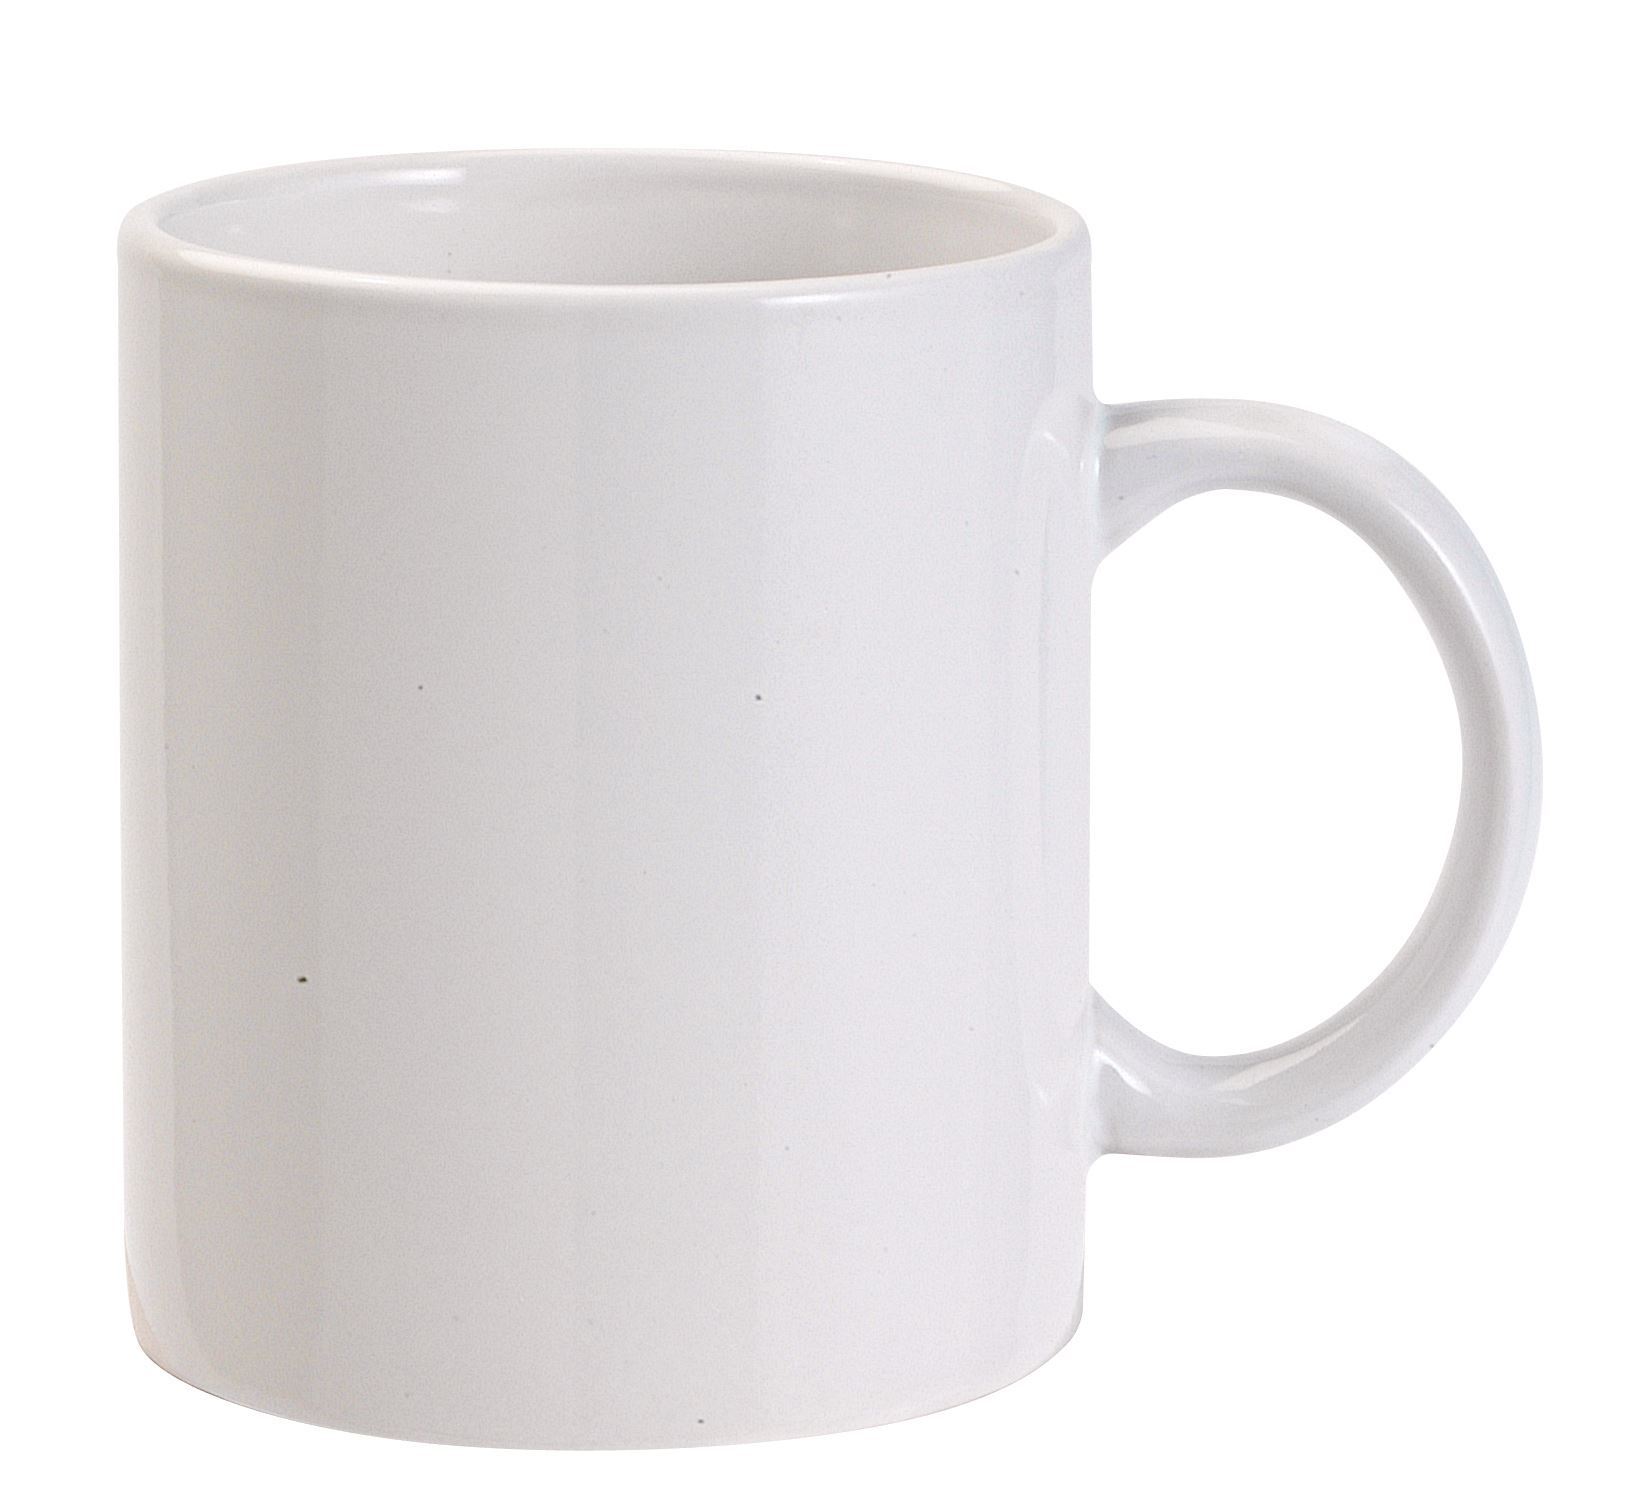 Ceramic mug, 0.3 ltr, white - Reklámajándék.hu Ltd.